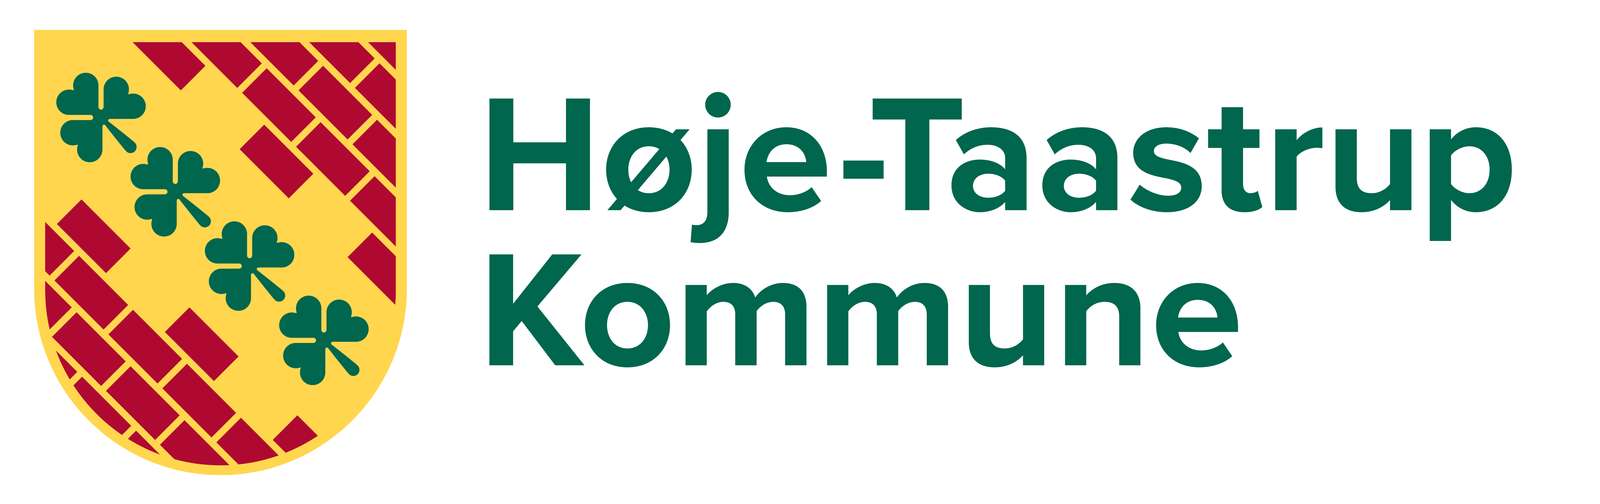 Høje-Taastrup Kommune Rådhuset